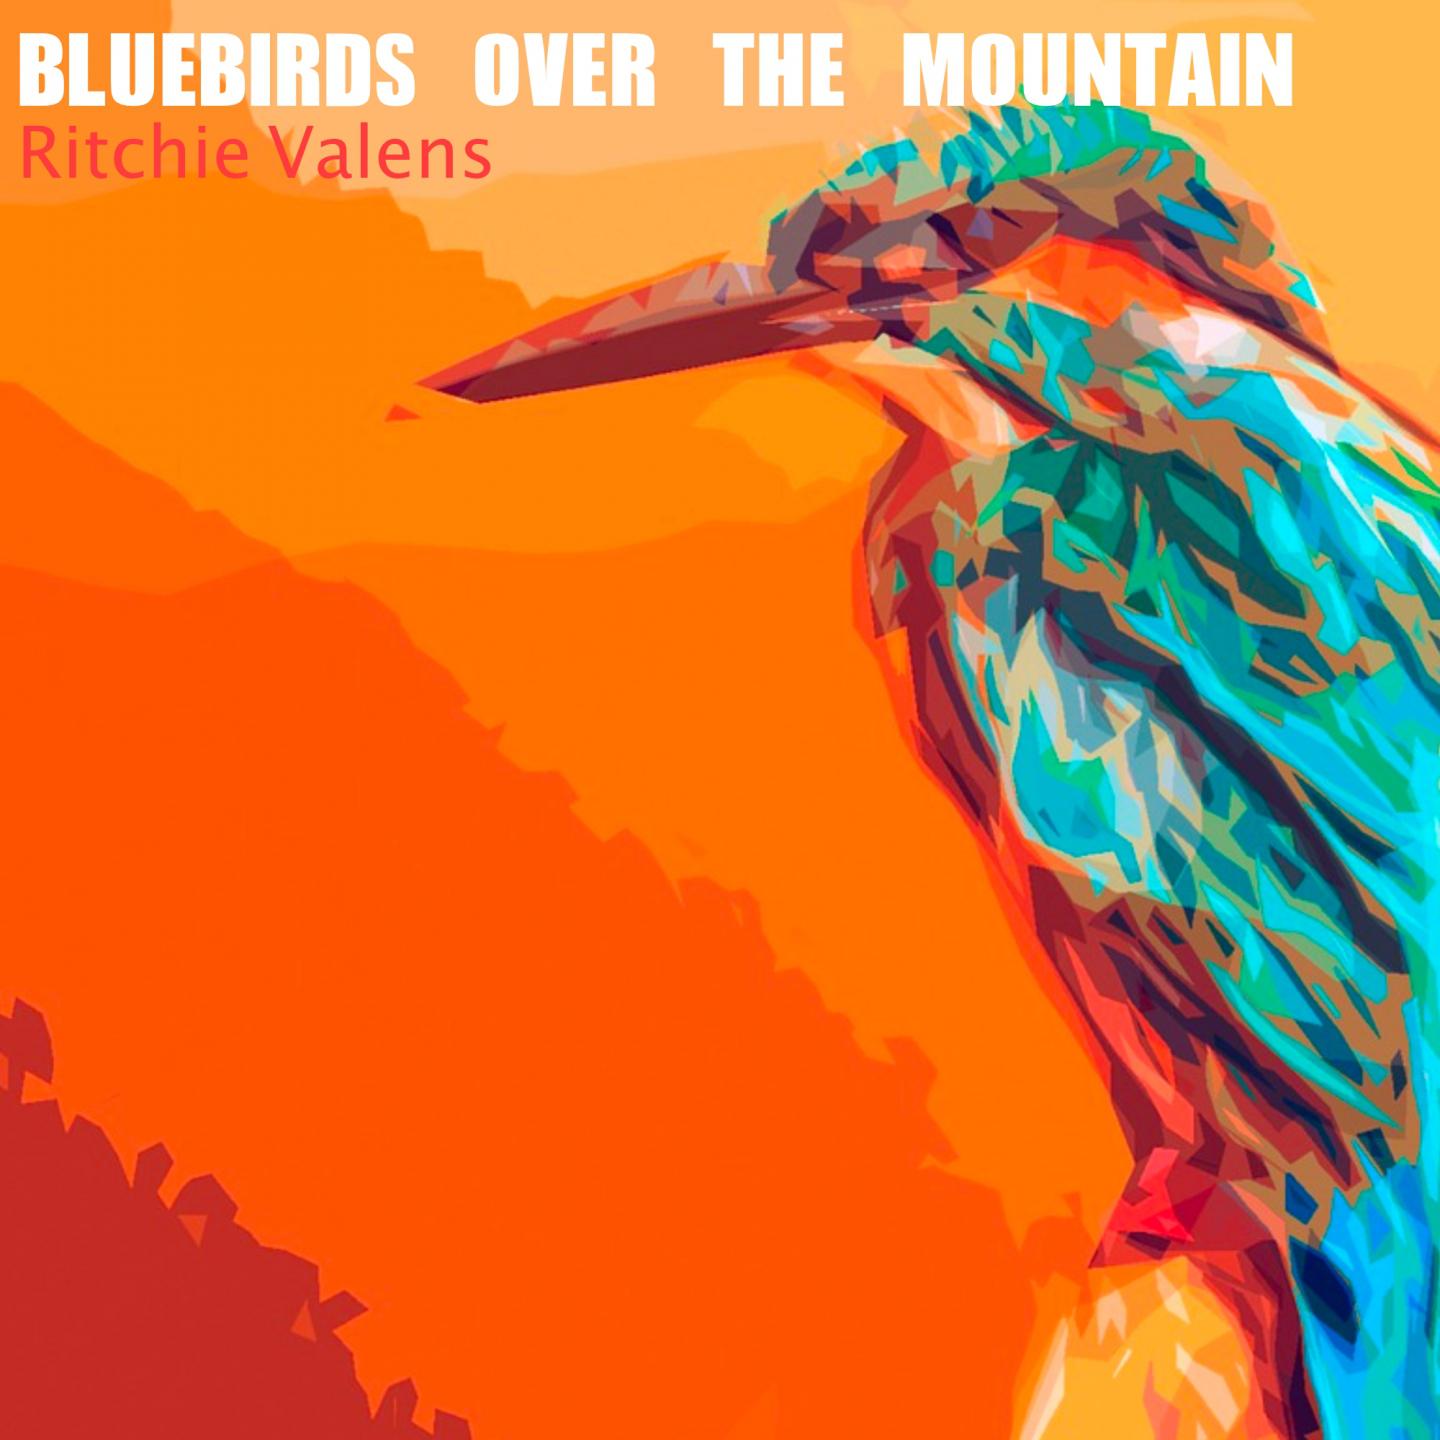 Bluebirds Over the Mountain